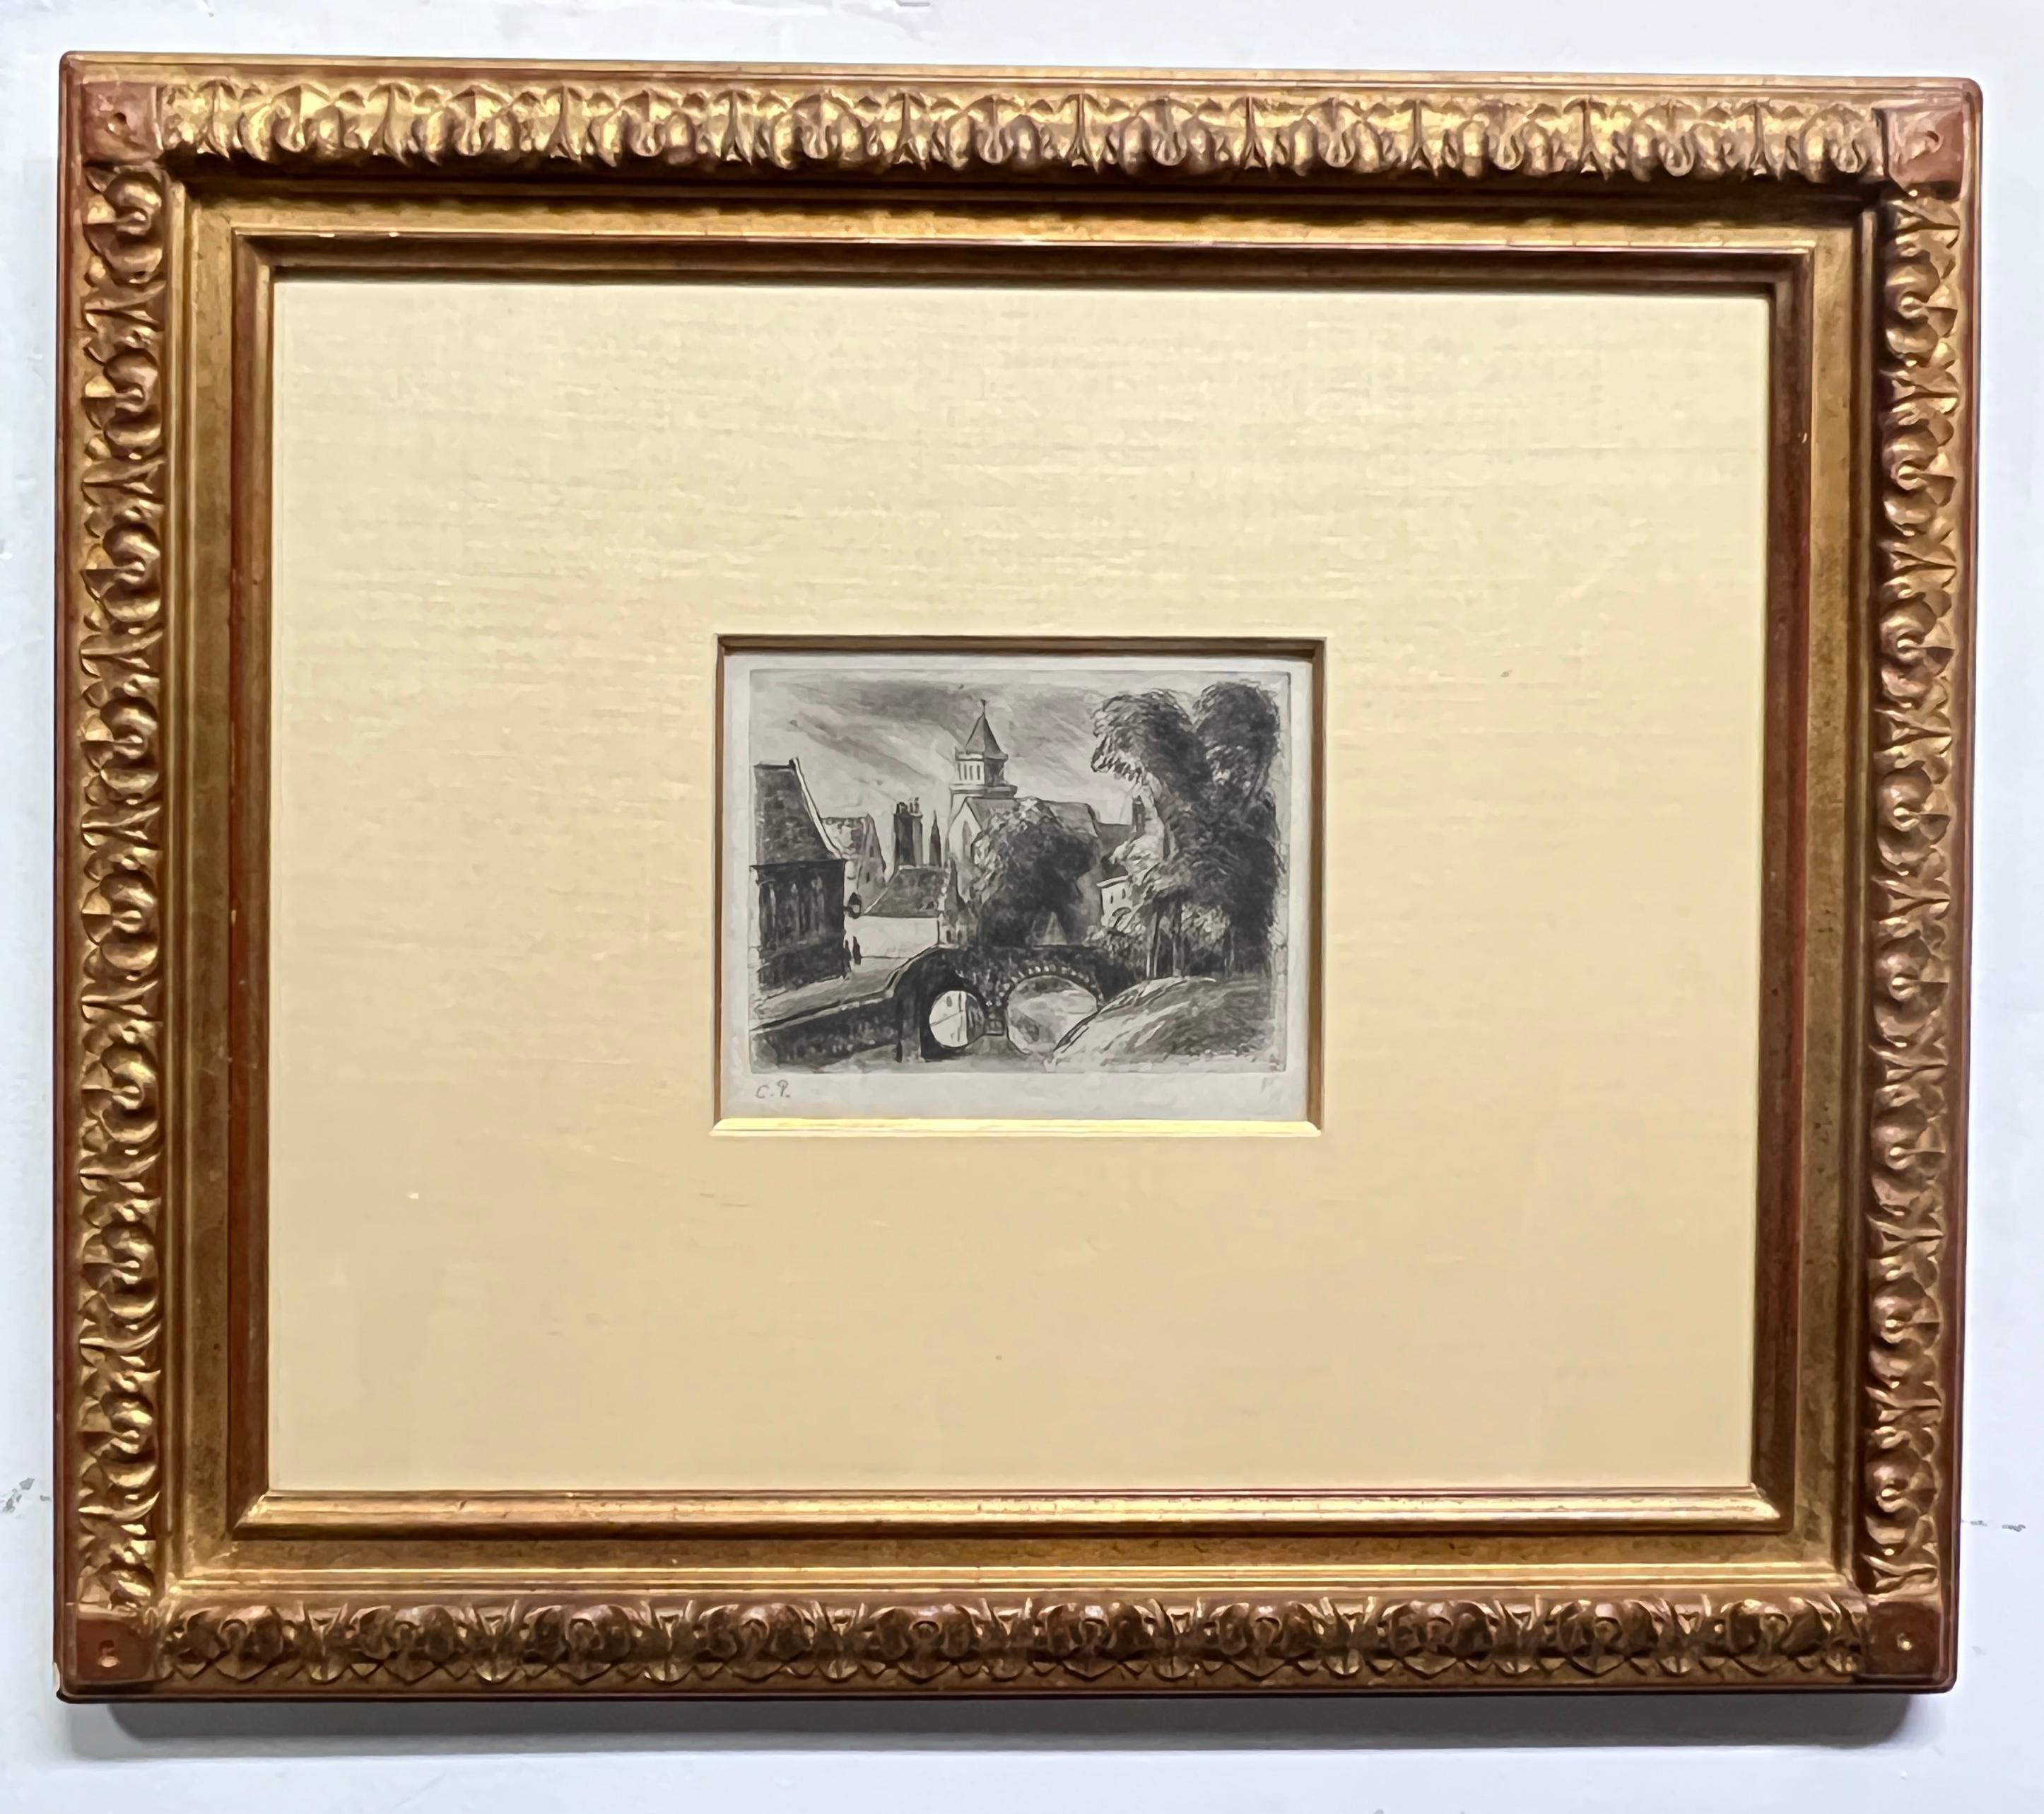 Quai des menetriers a bruges - Print by Camille Pissarro